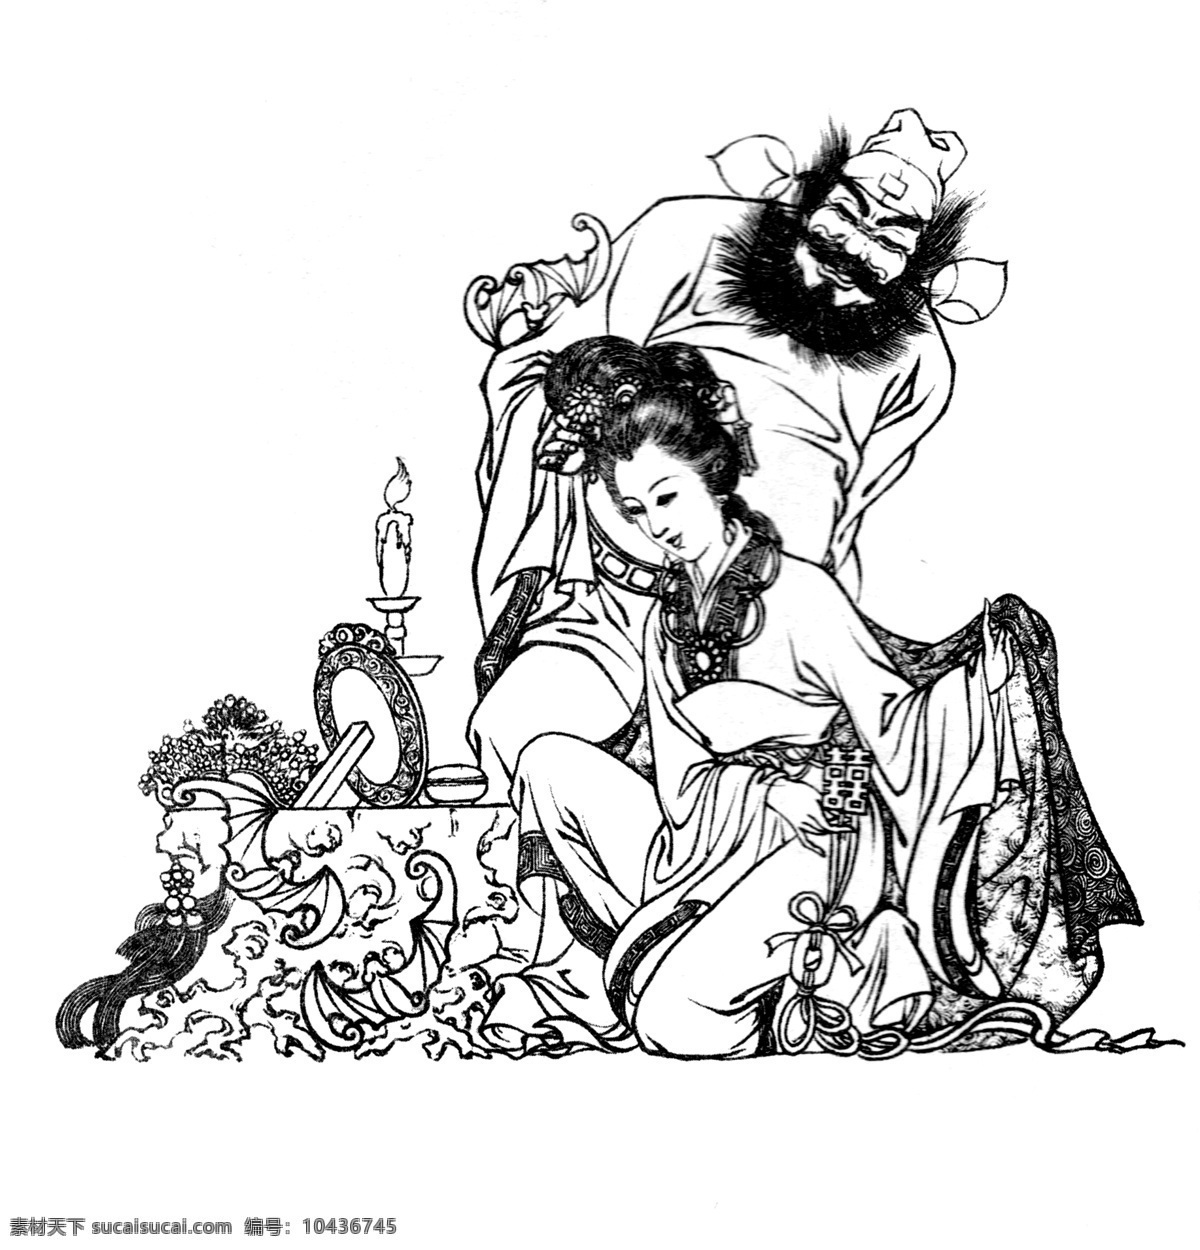 钟馗嫁妹 白描 图案 绘画 古典 传统纹样 人物 神话传说 仕女 传统文化 文化艺术